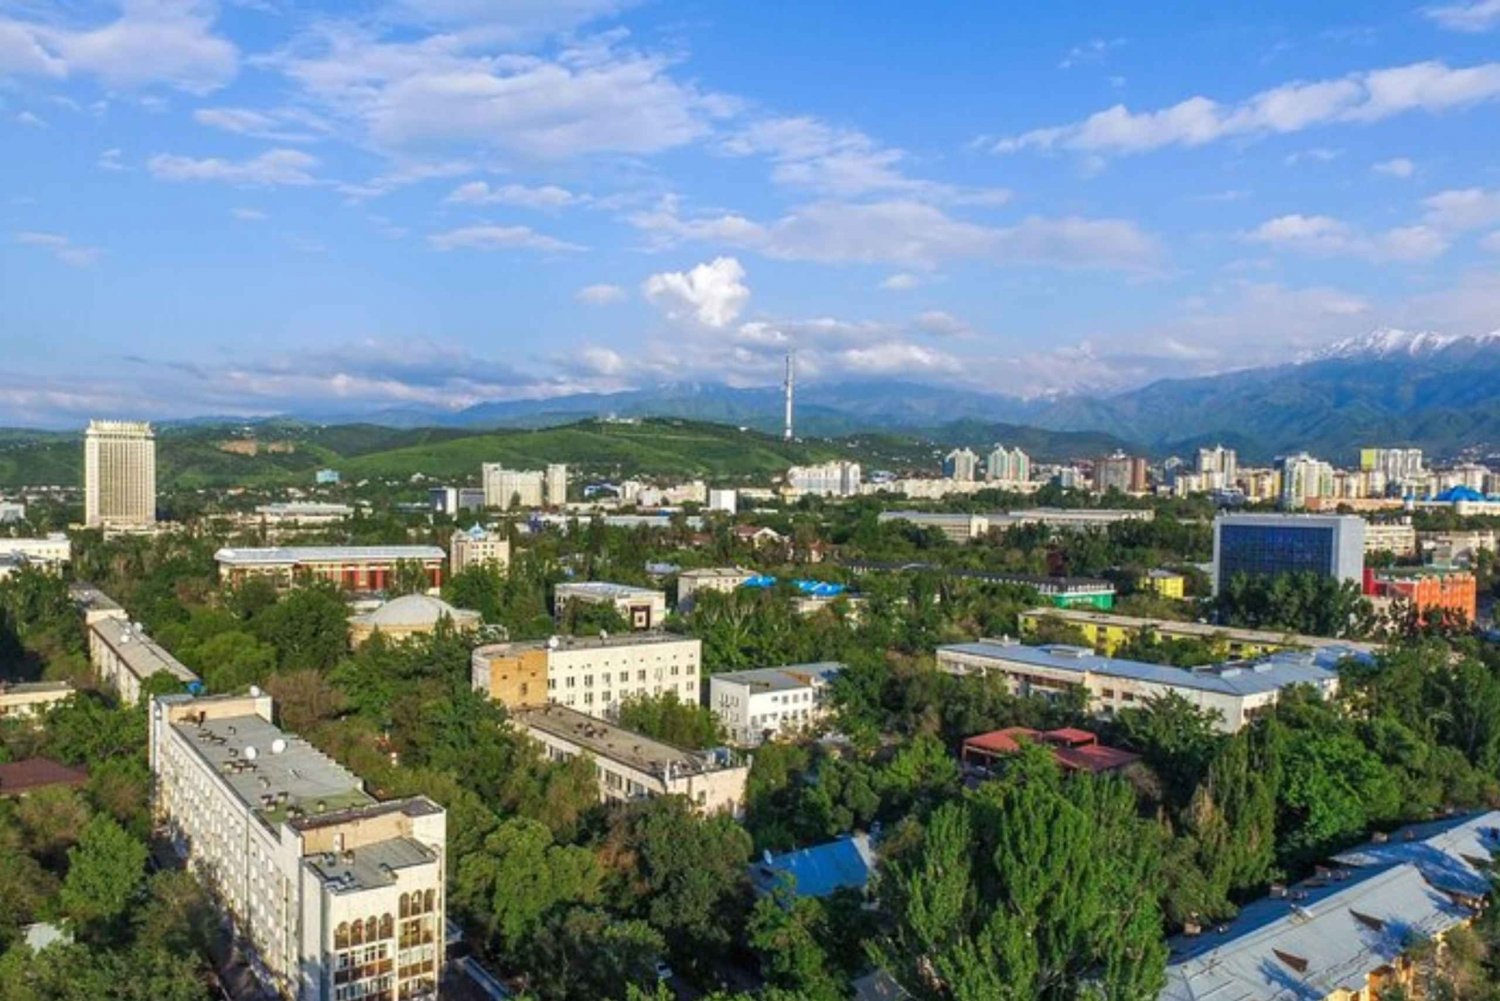 Almaty: Yksityinen kiertoajelu paikallisen oppaan johdolla